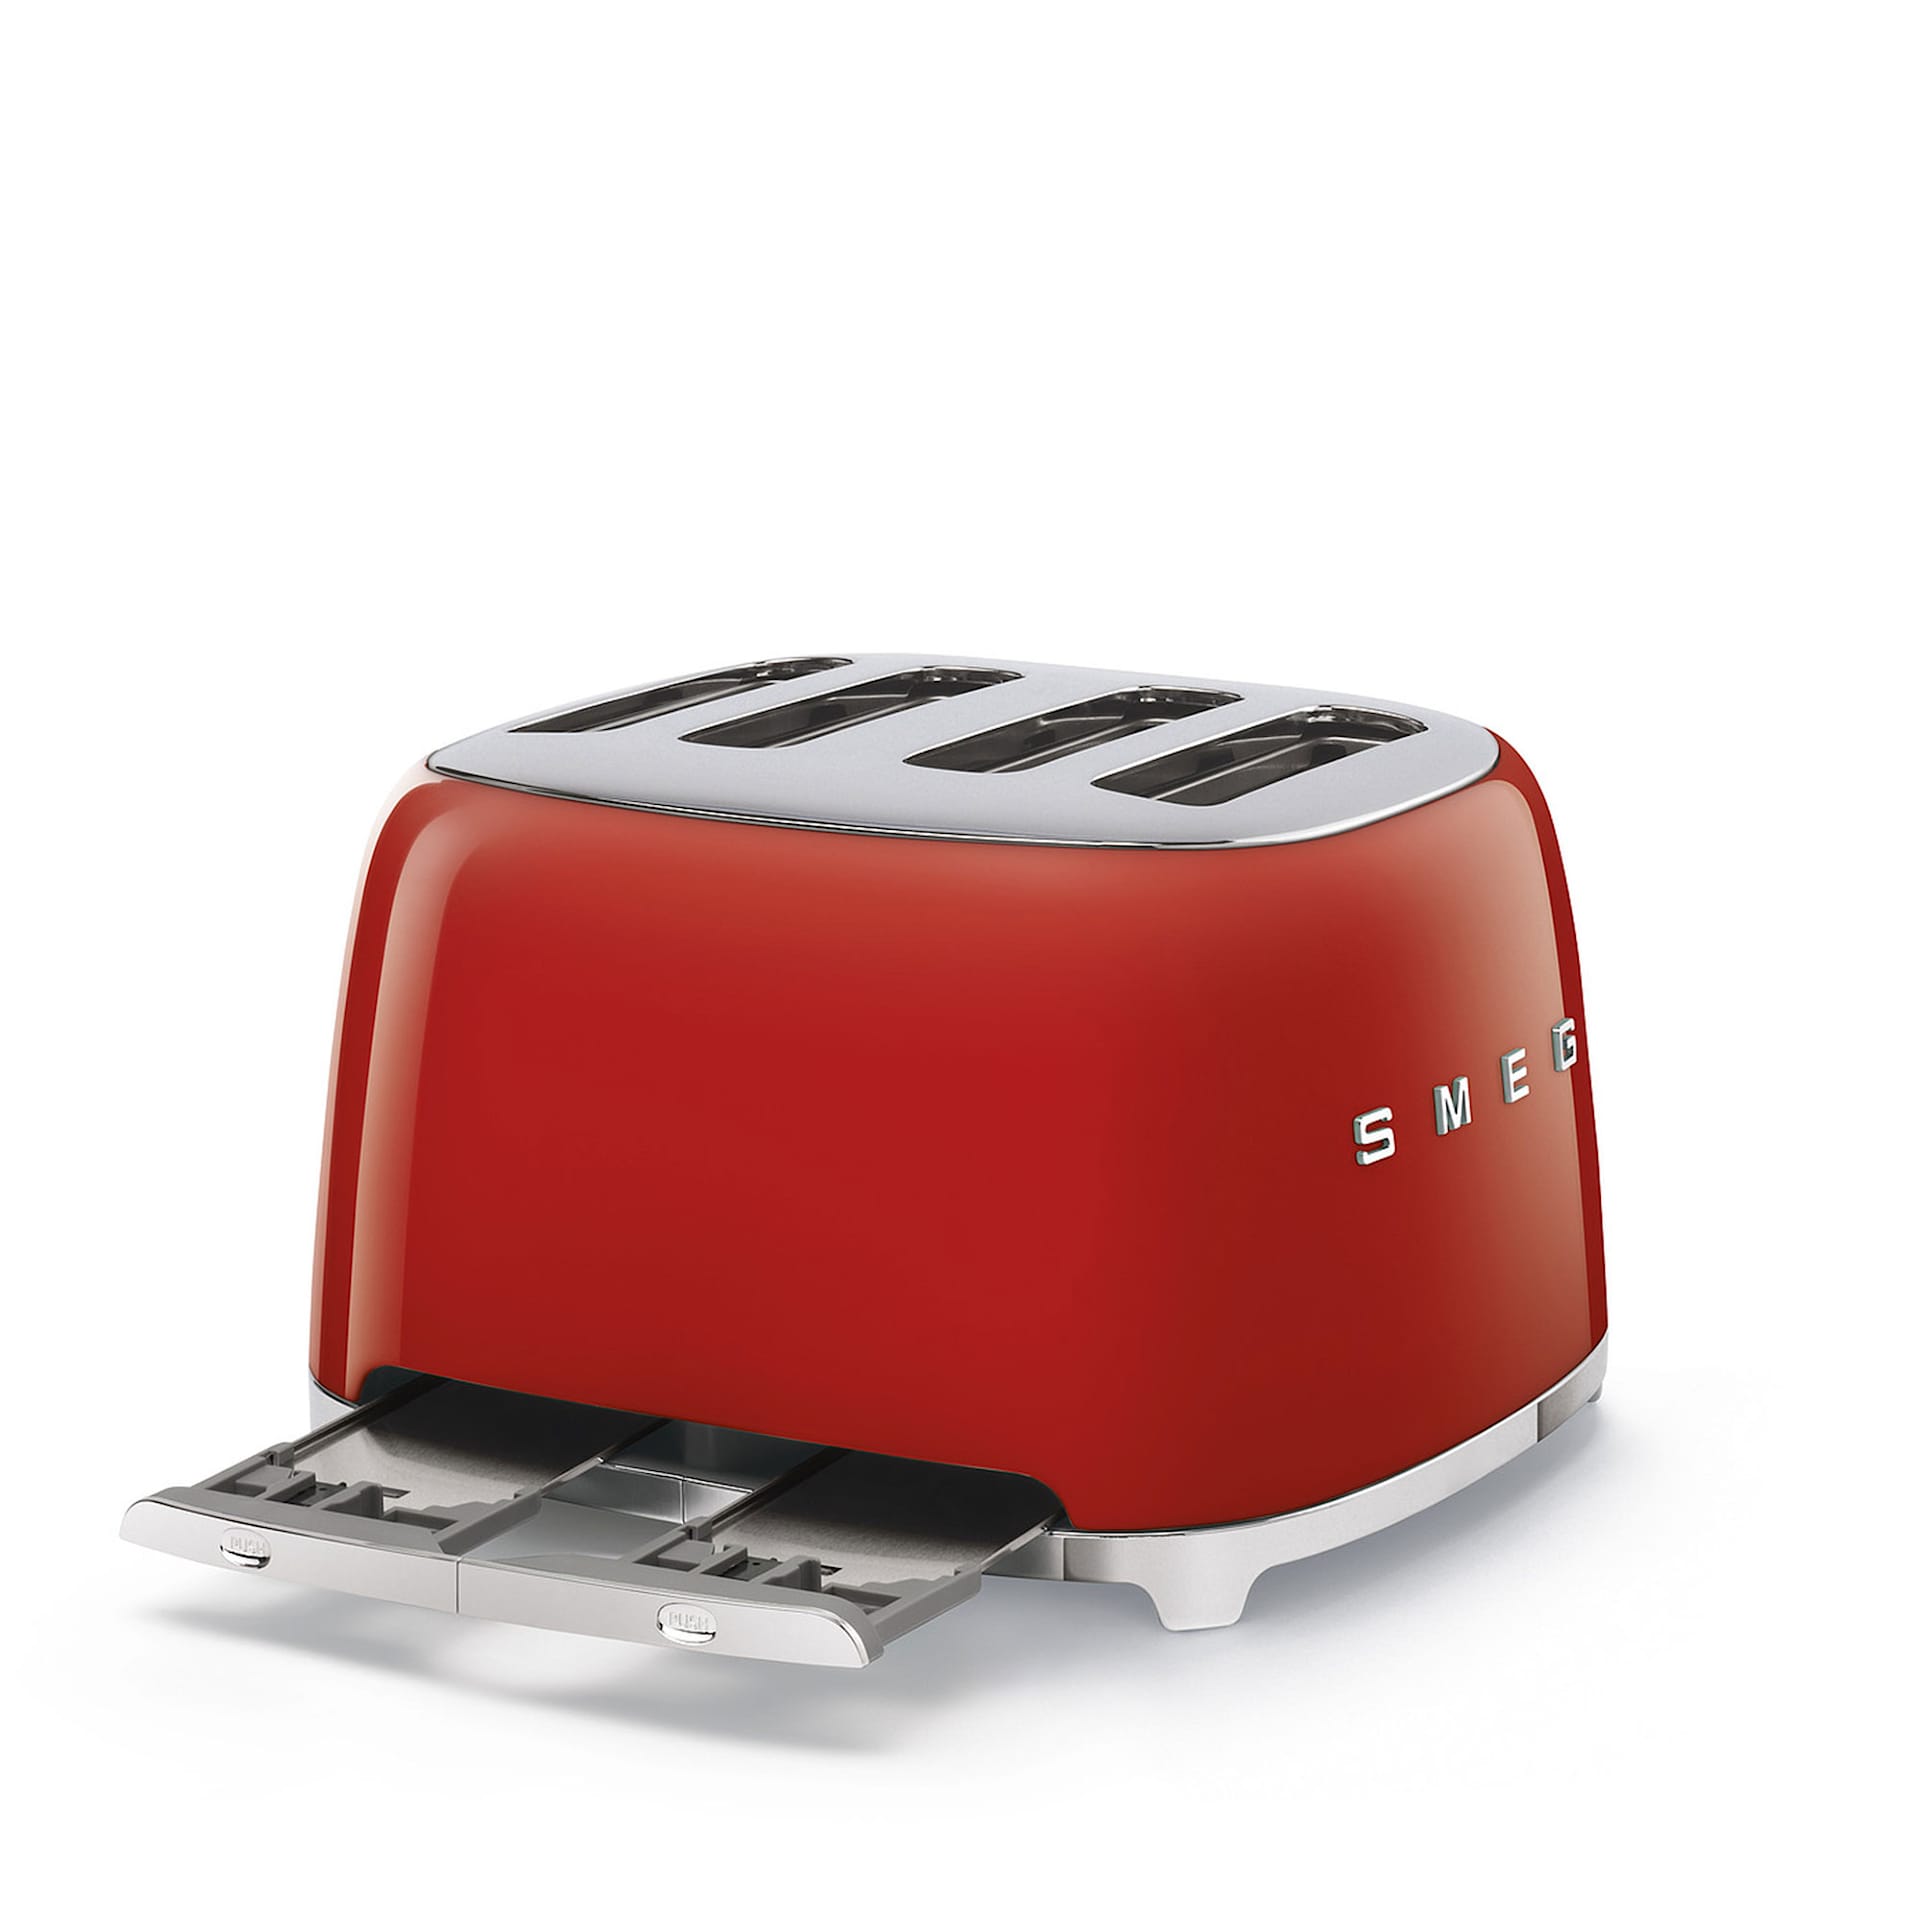 Smeg 4 Slot Toaster Red - Smeg - NO GA